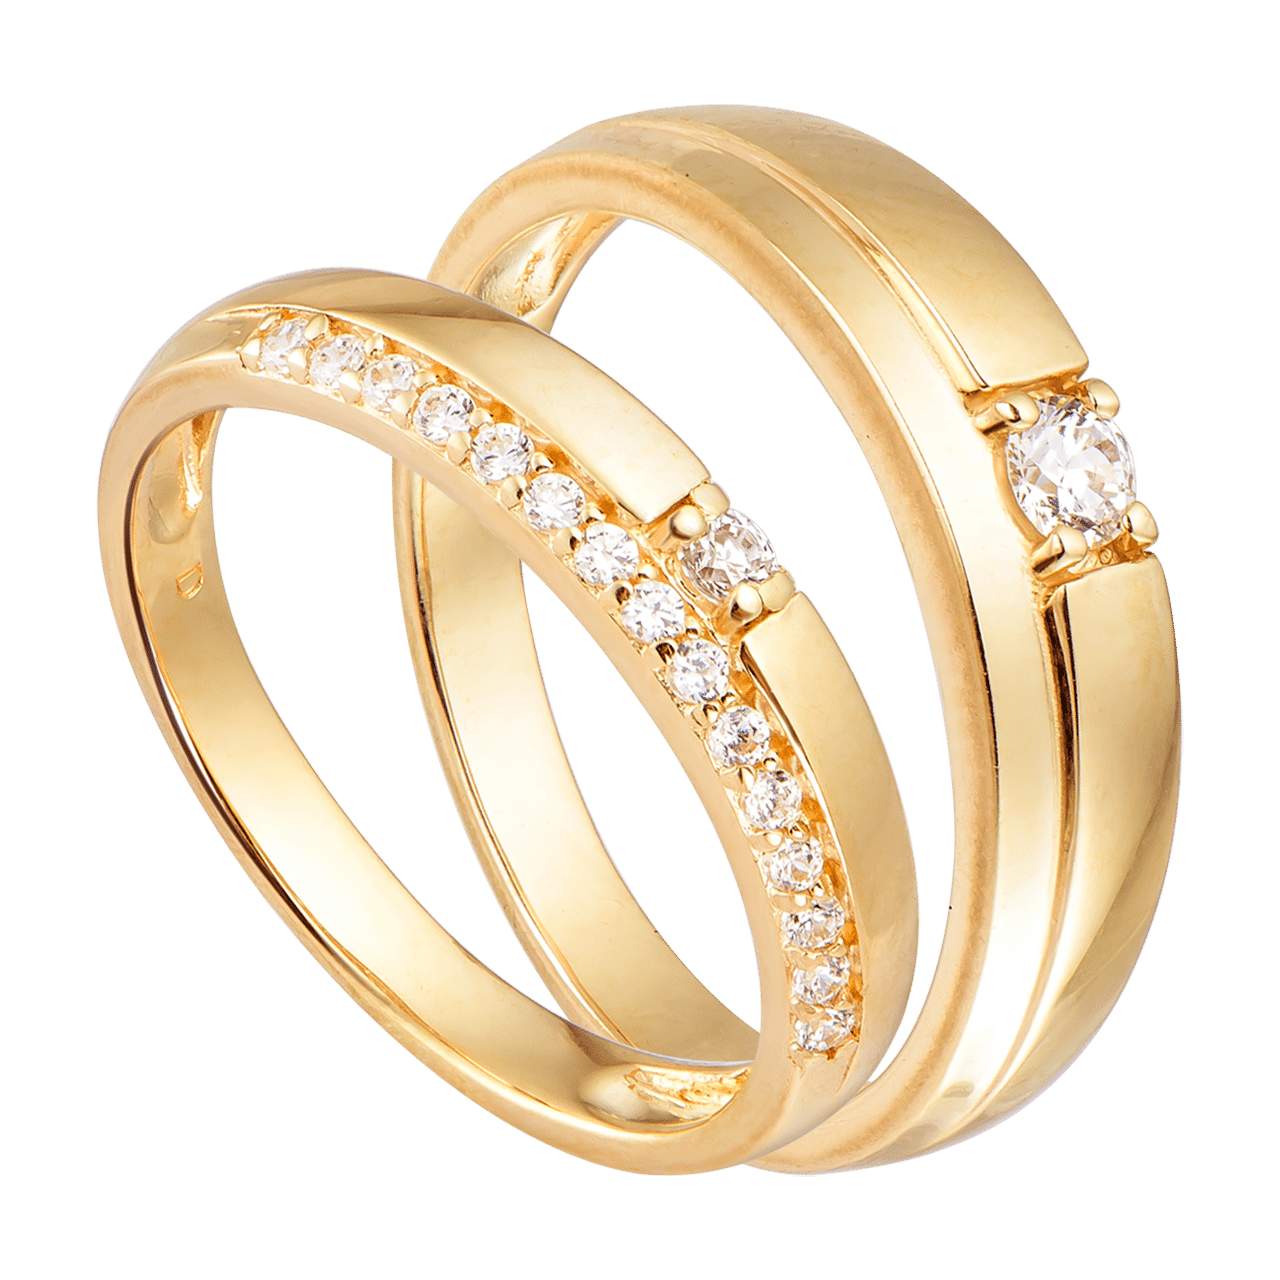 Cặp nhẫn cưới Vàng 18K đính đá ECZ PNJ 01806-00895